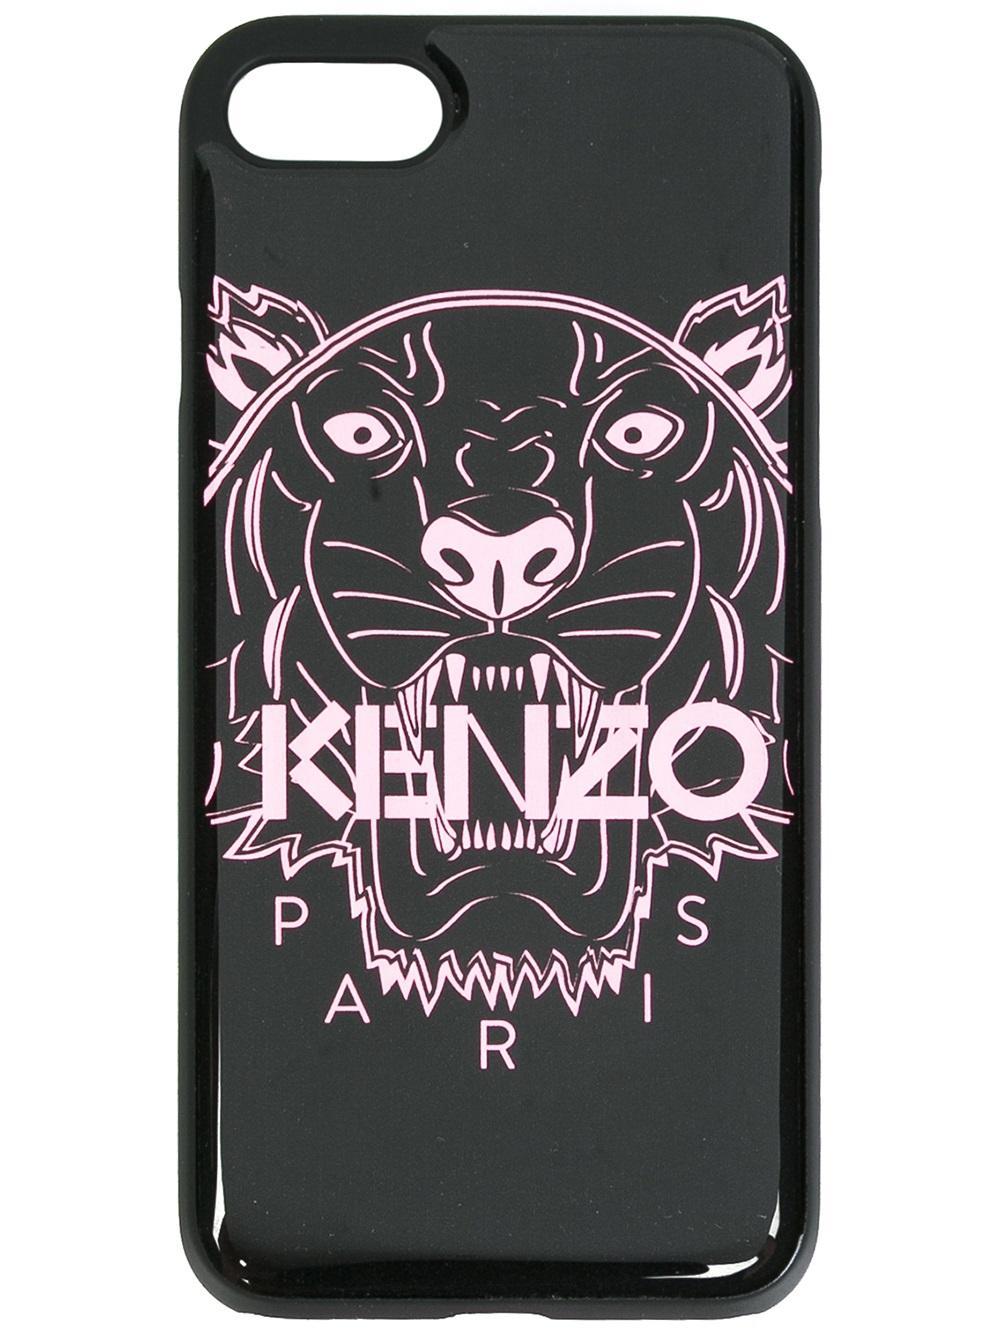 iphone 7 kenzo